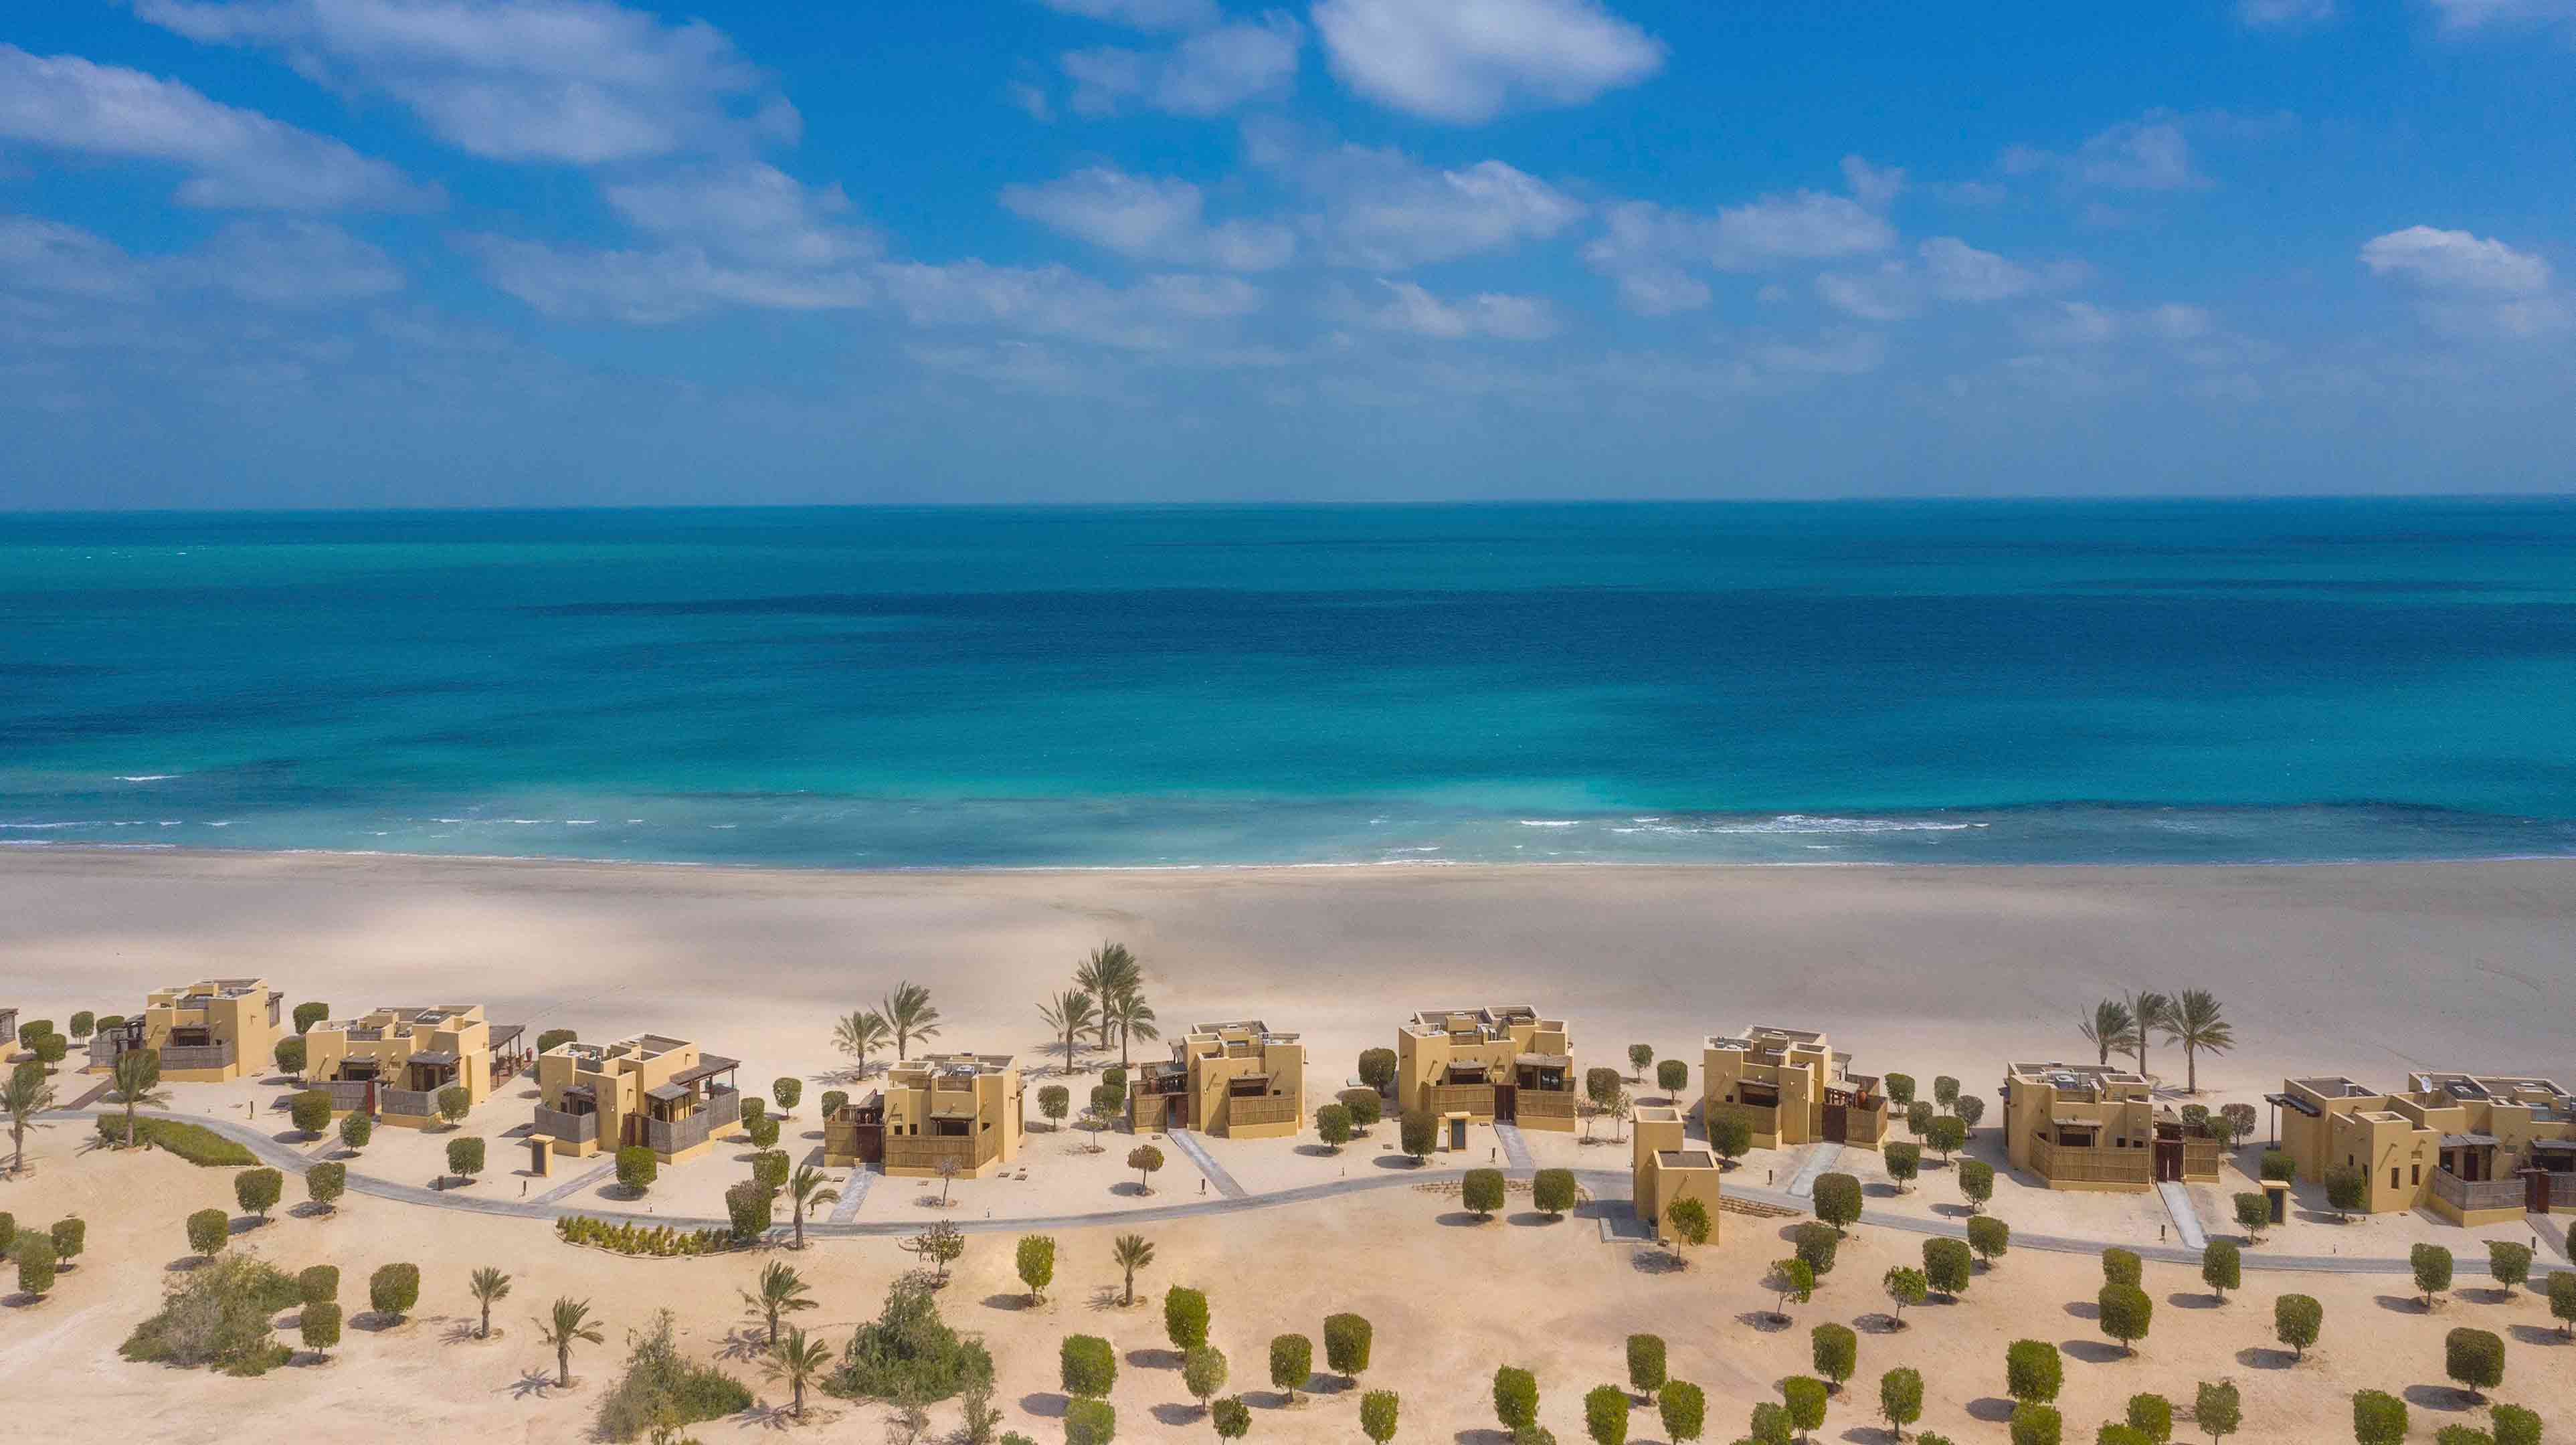 فلل صغيرة على شاطئ البحر في إمارة أبوظبي